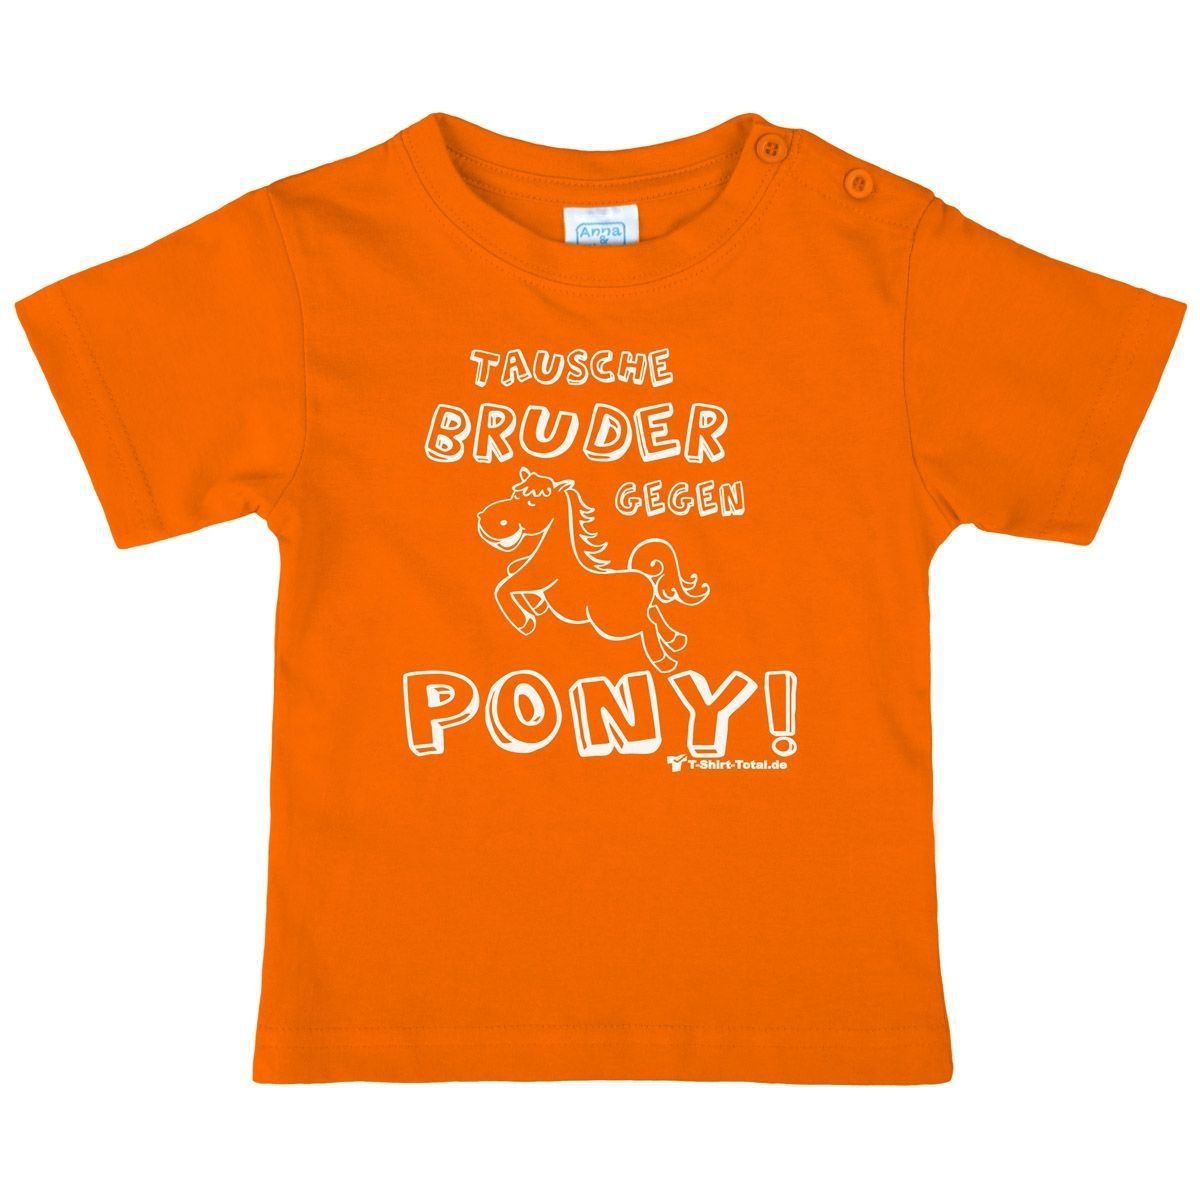 Tausche Bruder gegen Pony Kinder T-Shirt orange 80 / 86